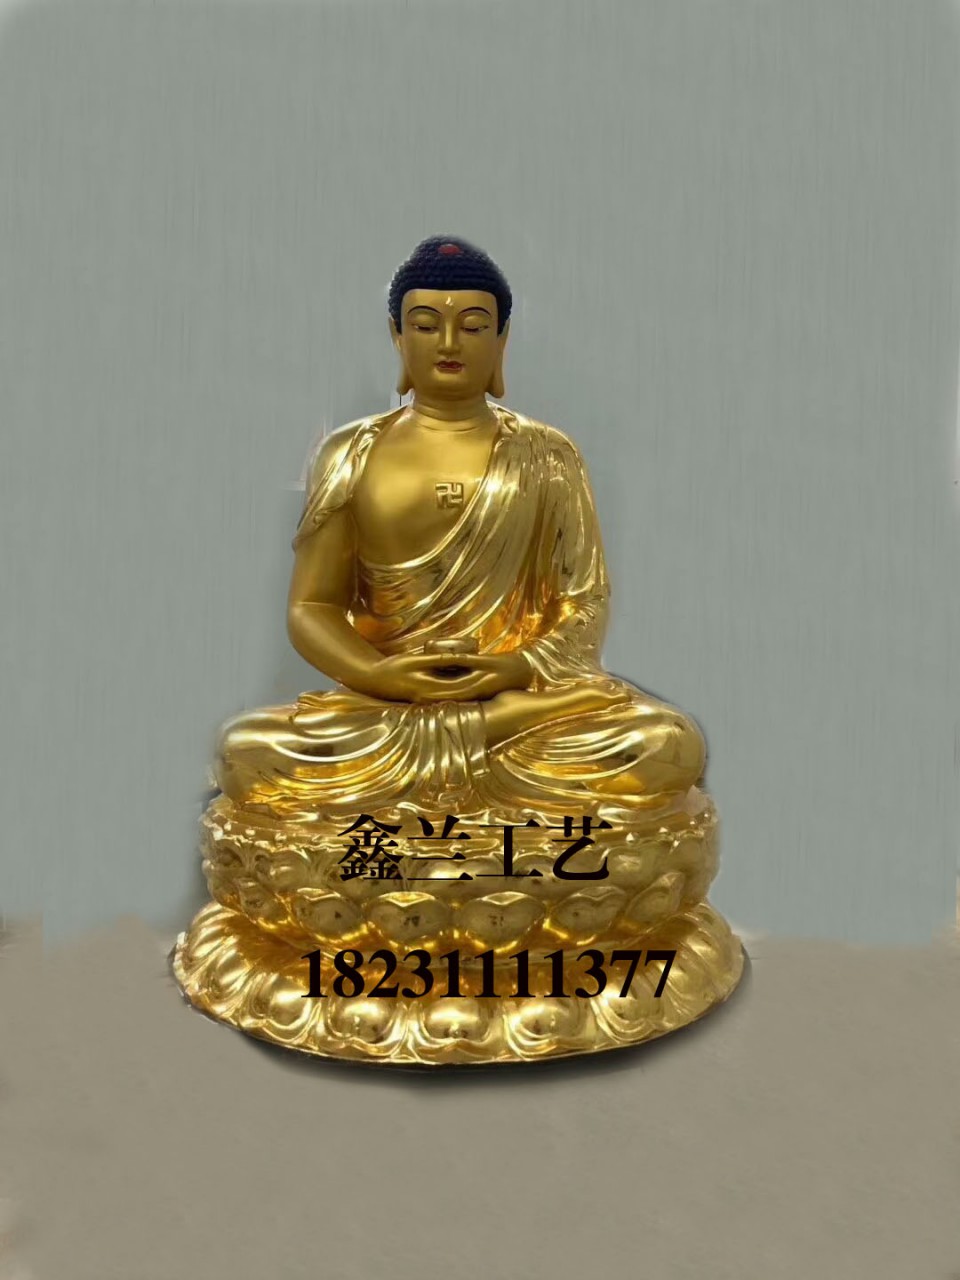 鑄銅佛像佛教中的“銅雕佛像三世佛”，你知道是誰嗎？